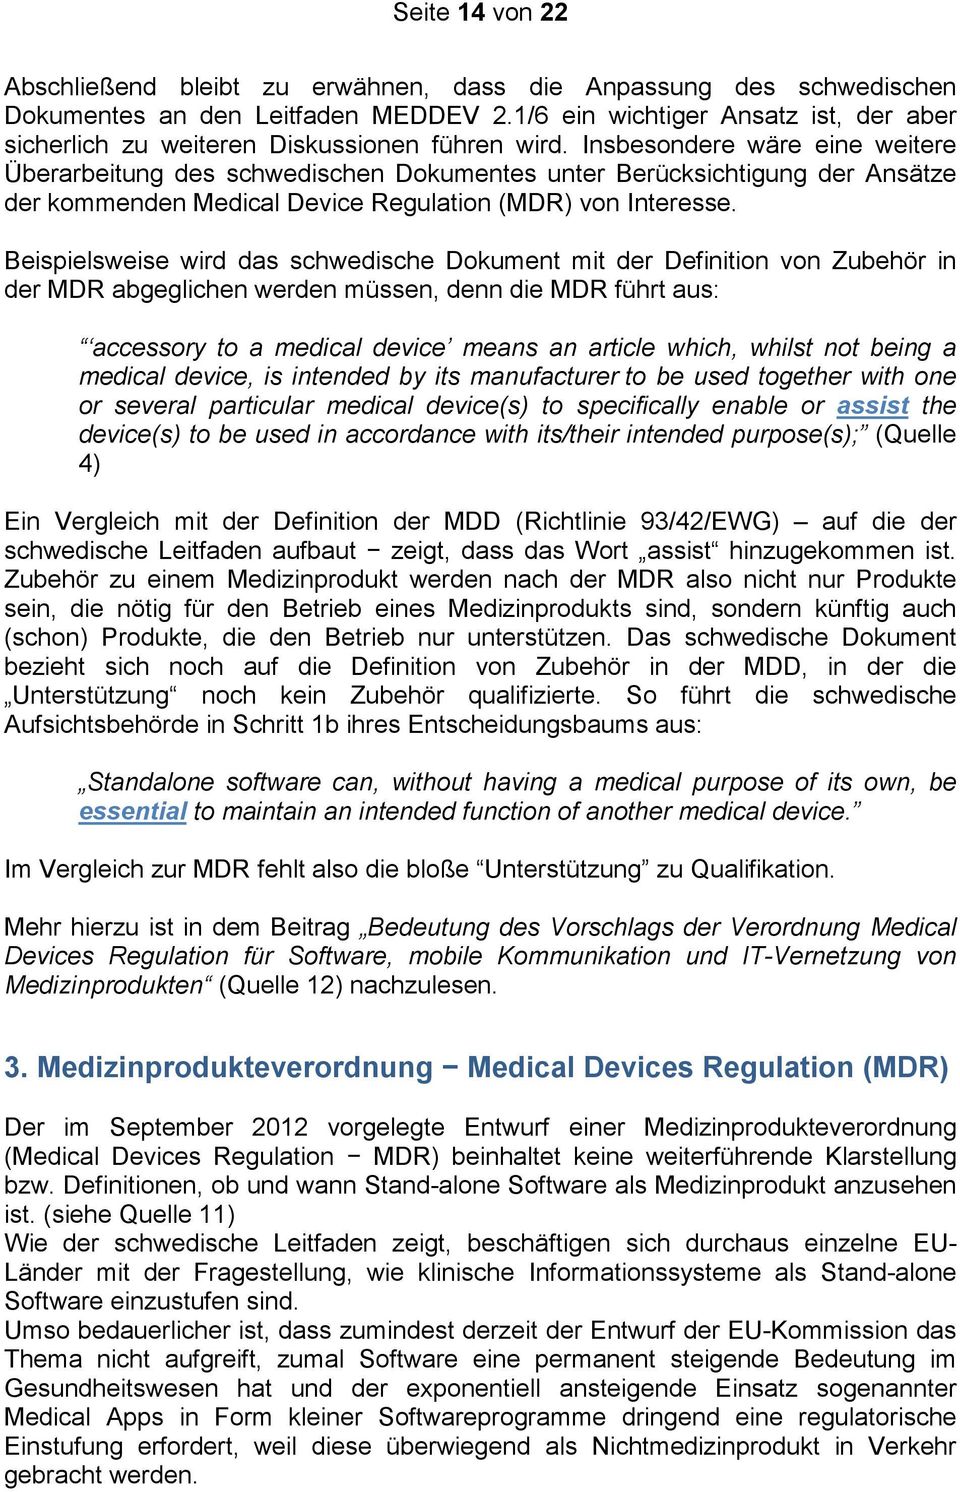 Insbesondere wäre eine weitere Überarbeitung des schwedischen Dokumentes unter Berücksichtigung der Ansätze der kommenden Medical Device Regulation (MDR) von Interesse.